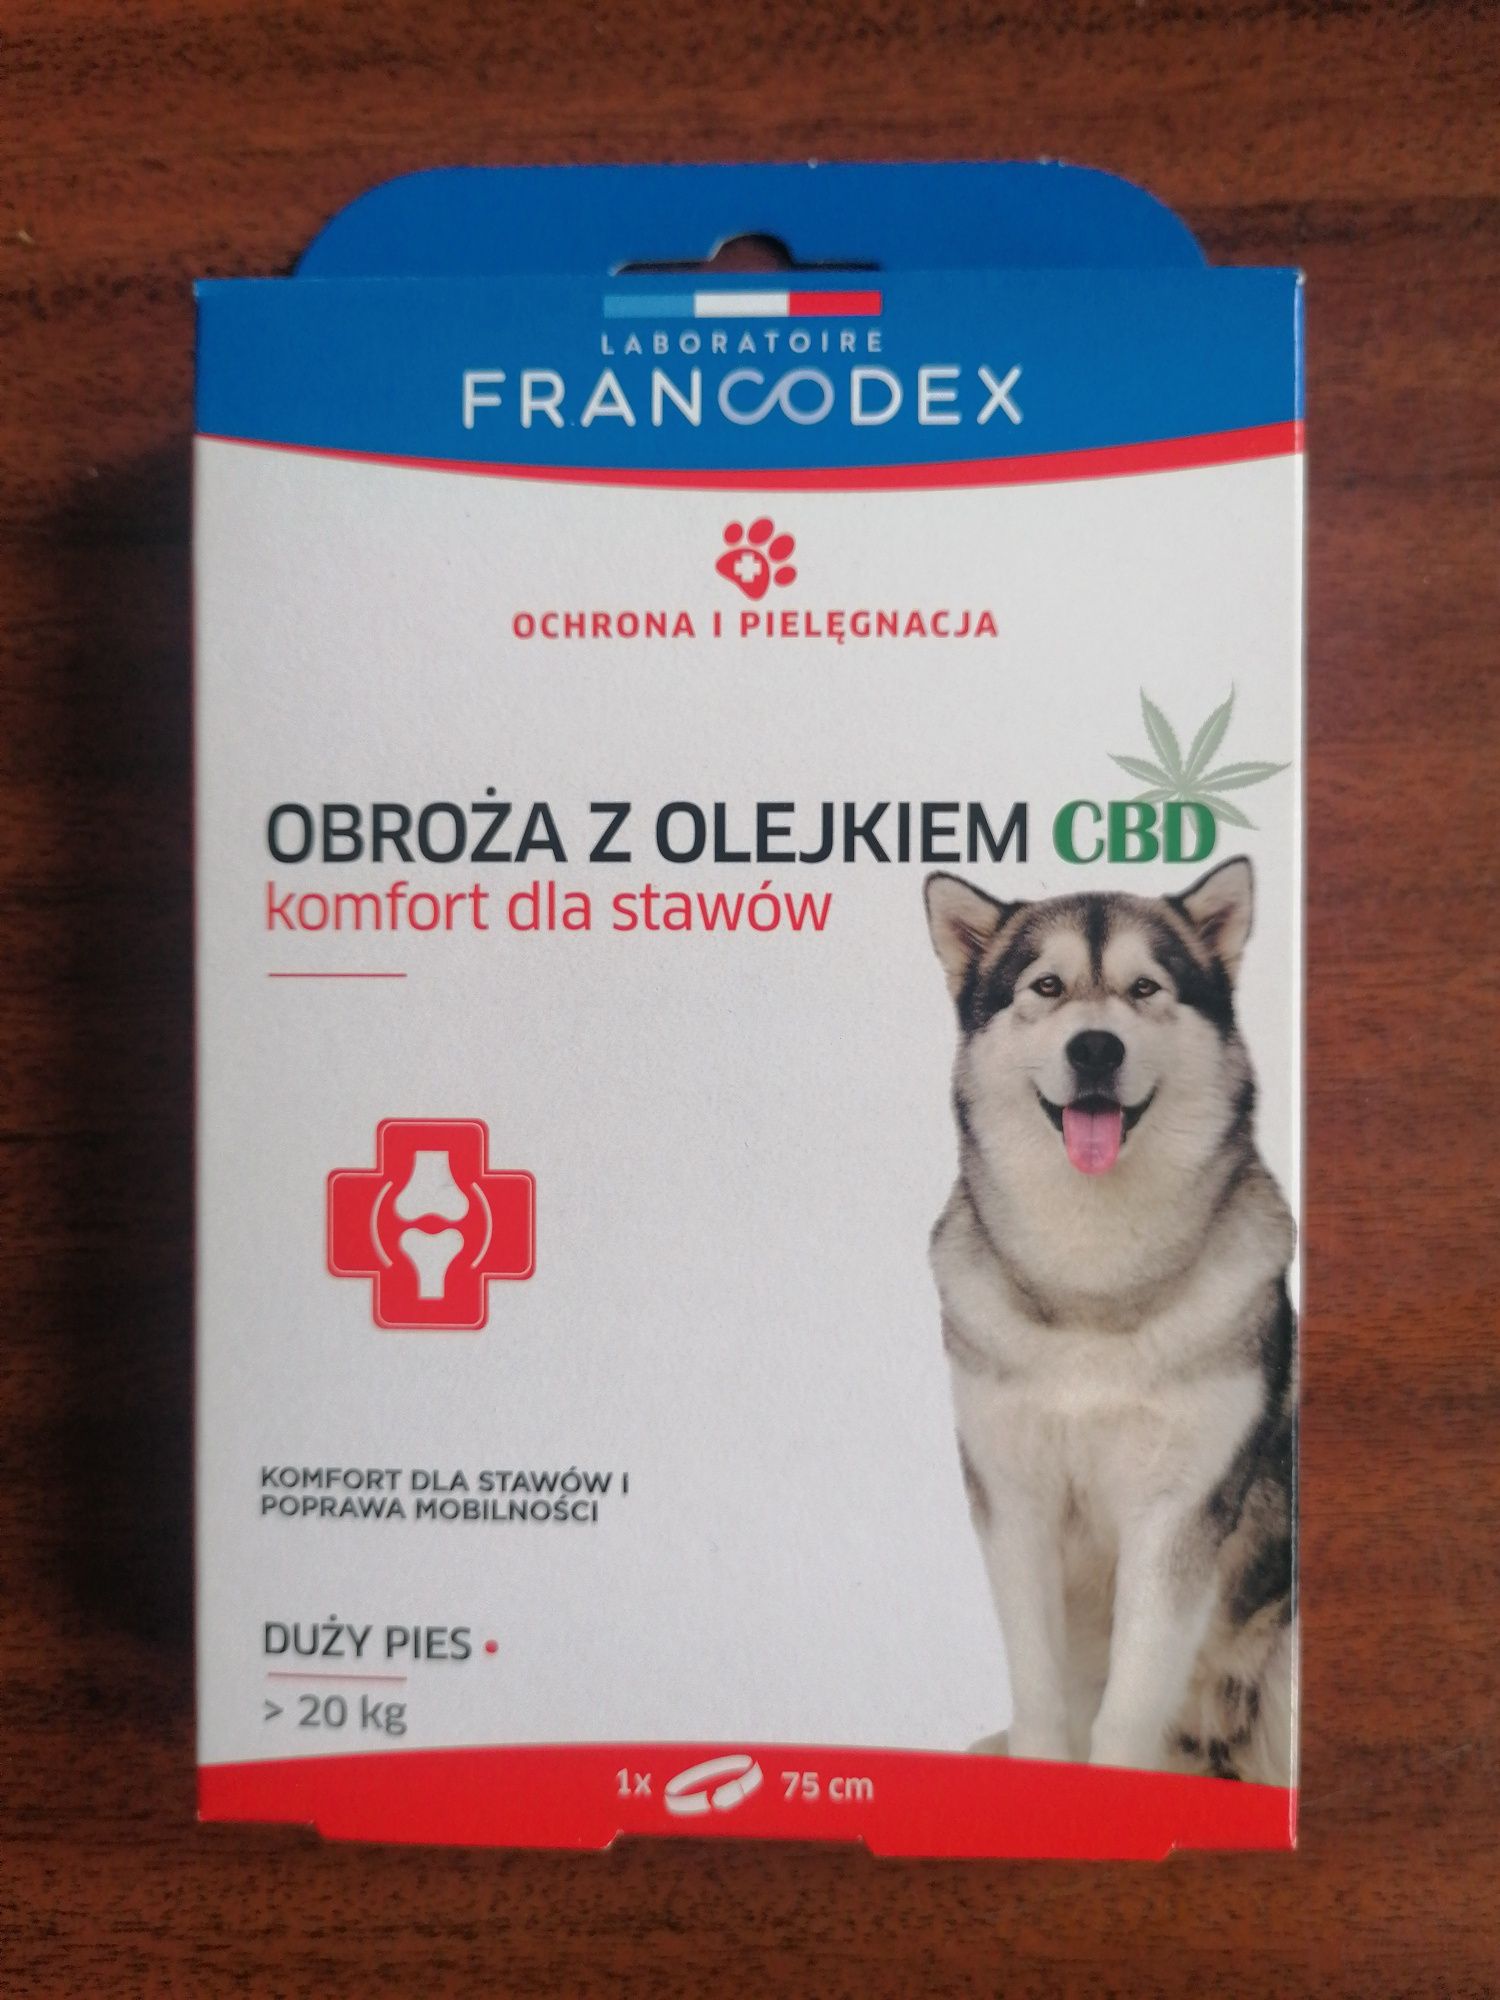 Obroża z CBD Francodex dla psów powyżej 20kg. Komfort dla stawów!